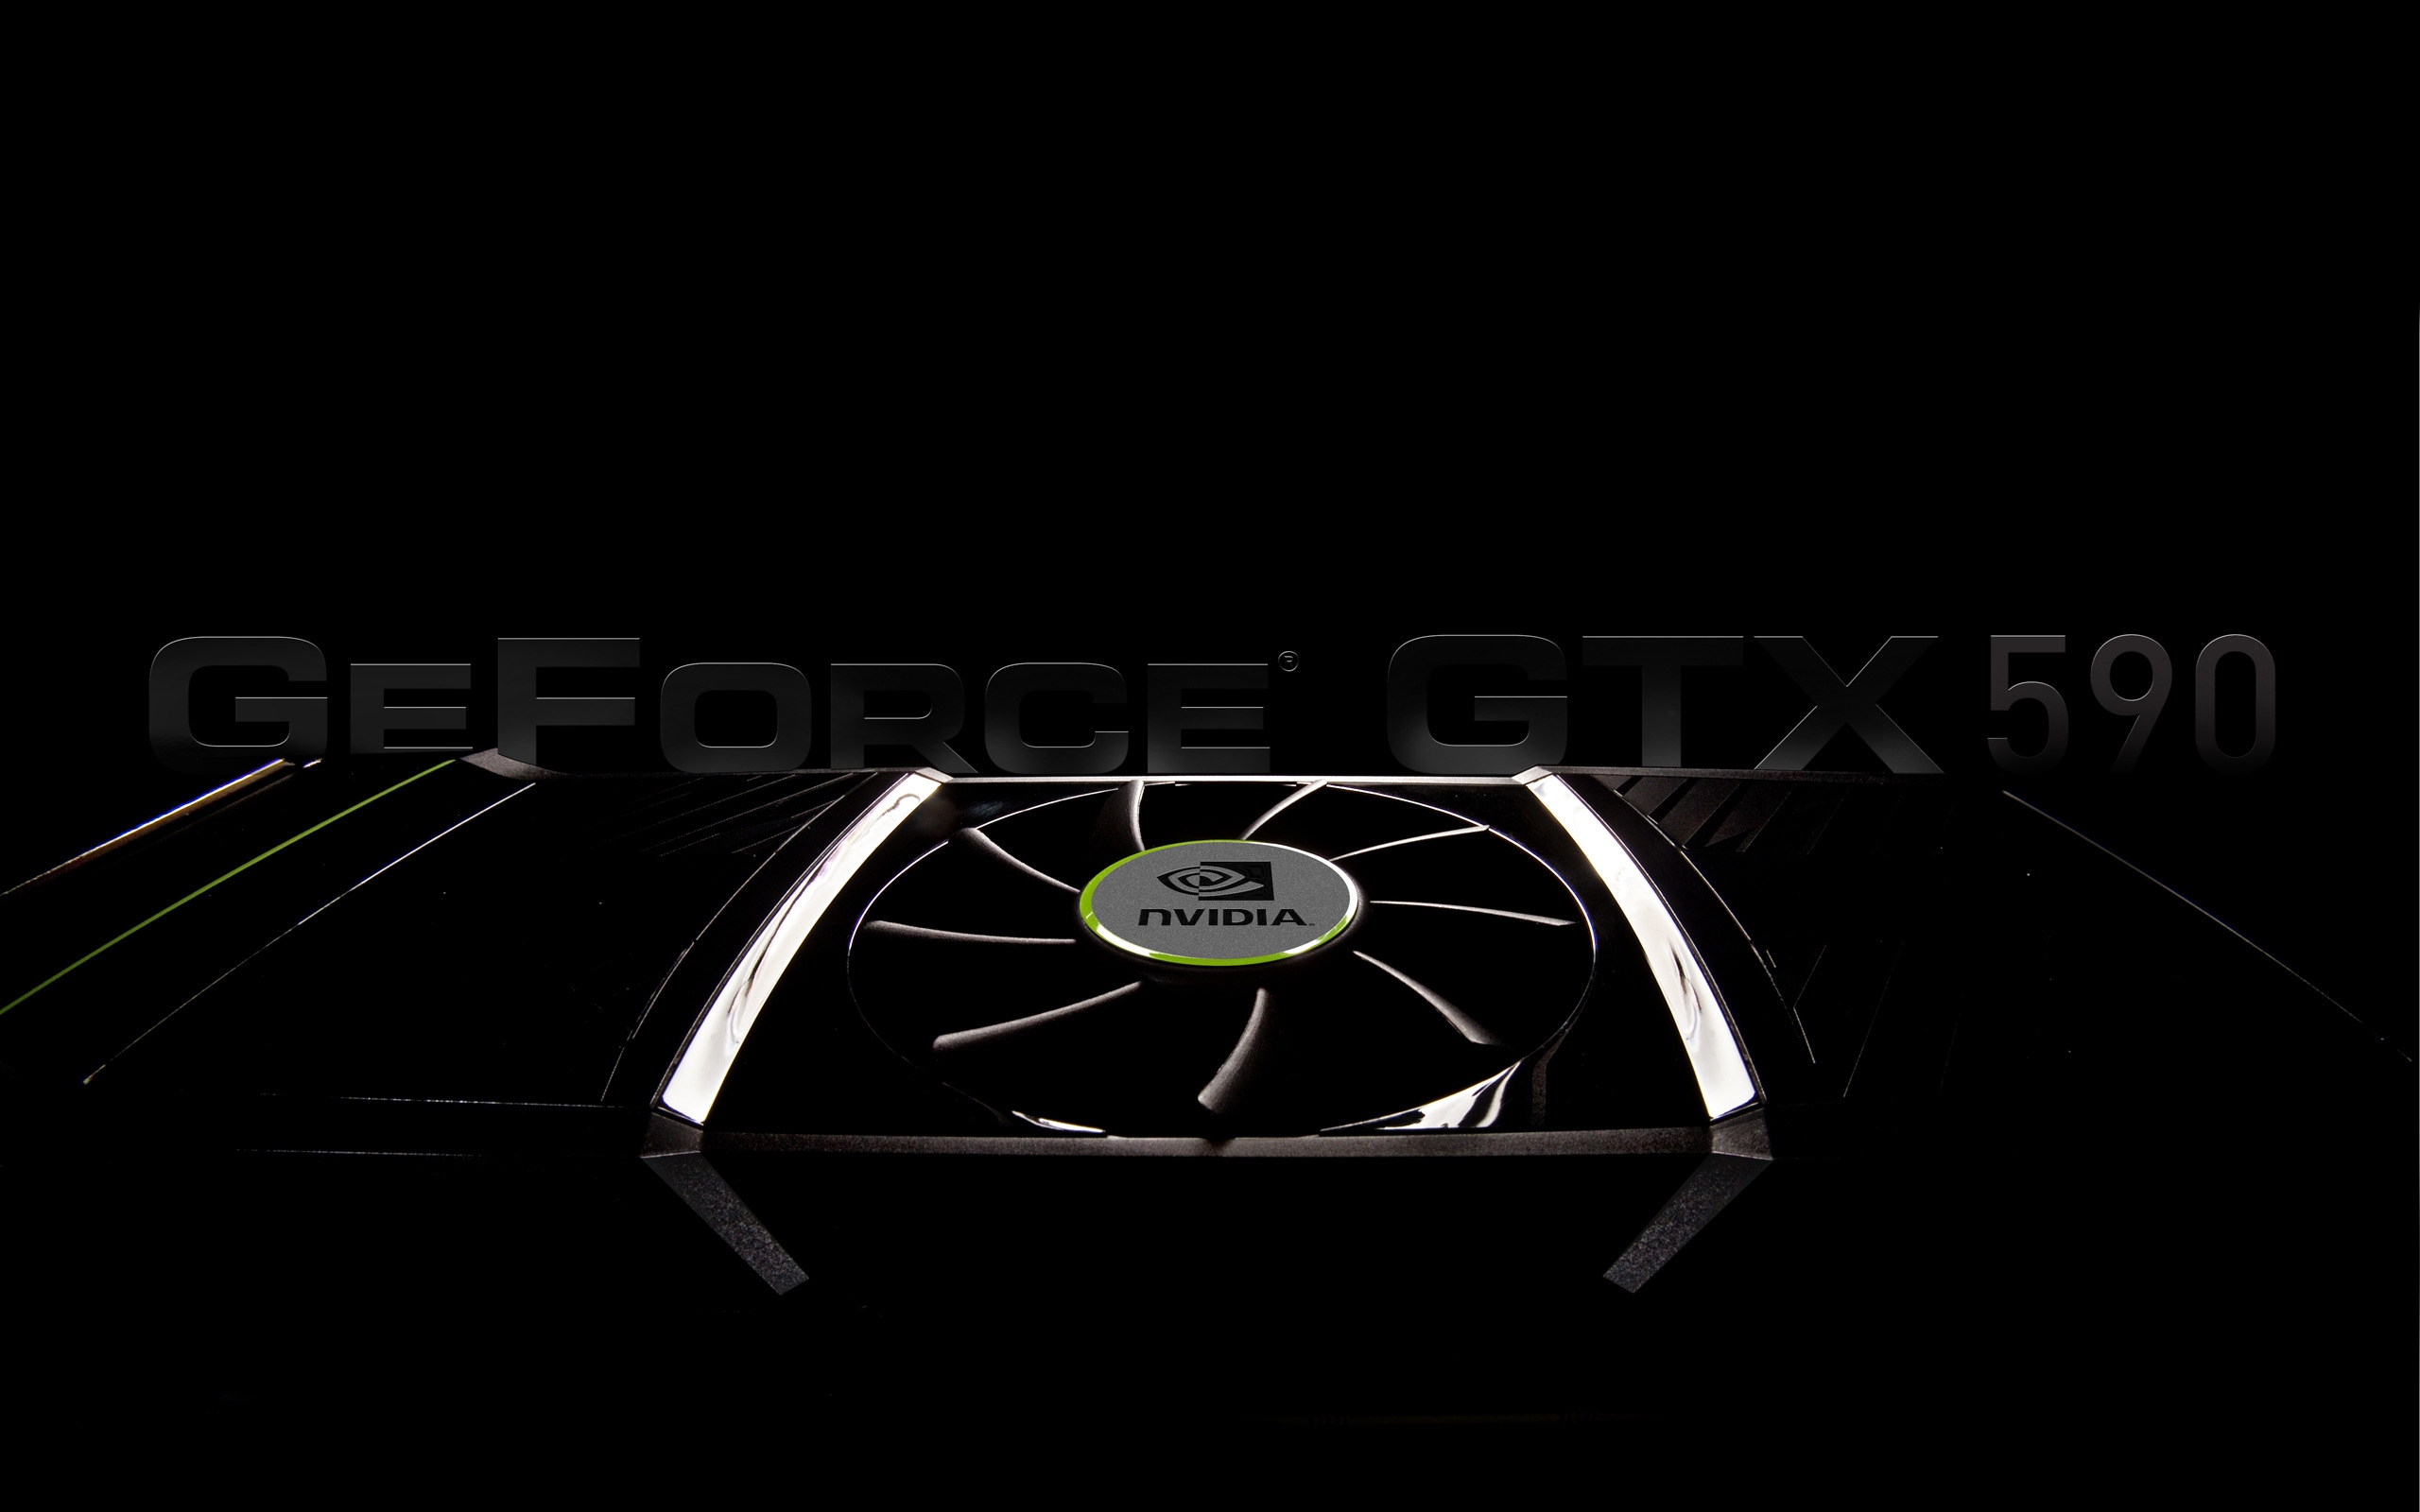 GeForce GTX 590 for 2560 x 1600 widescreen resolution